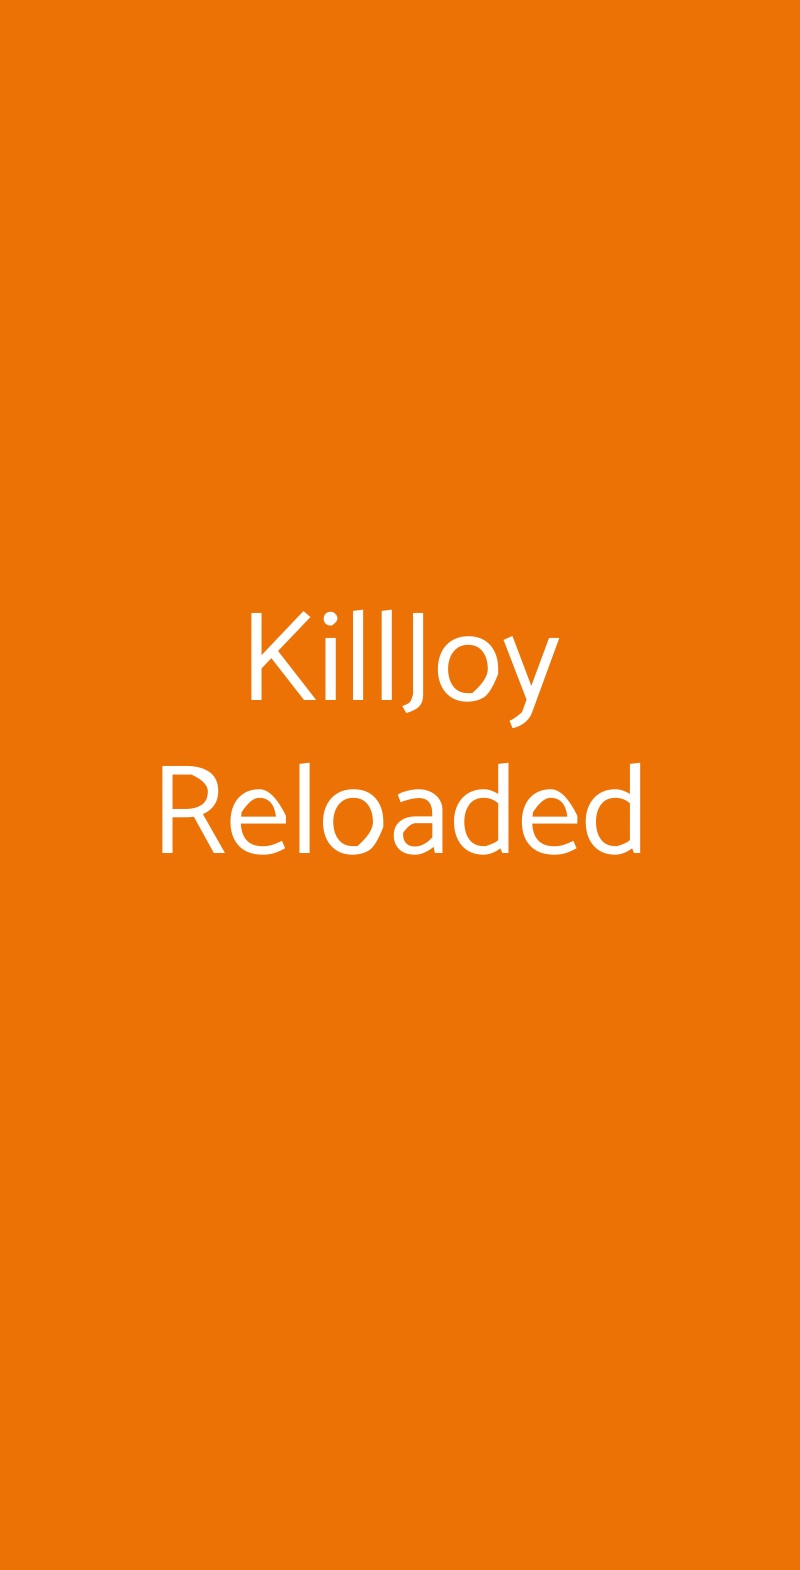 KillJoy Reloaded Roma menù 1 pagina